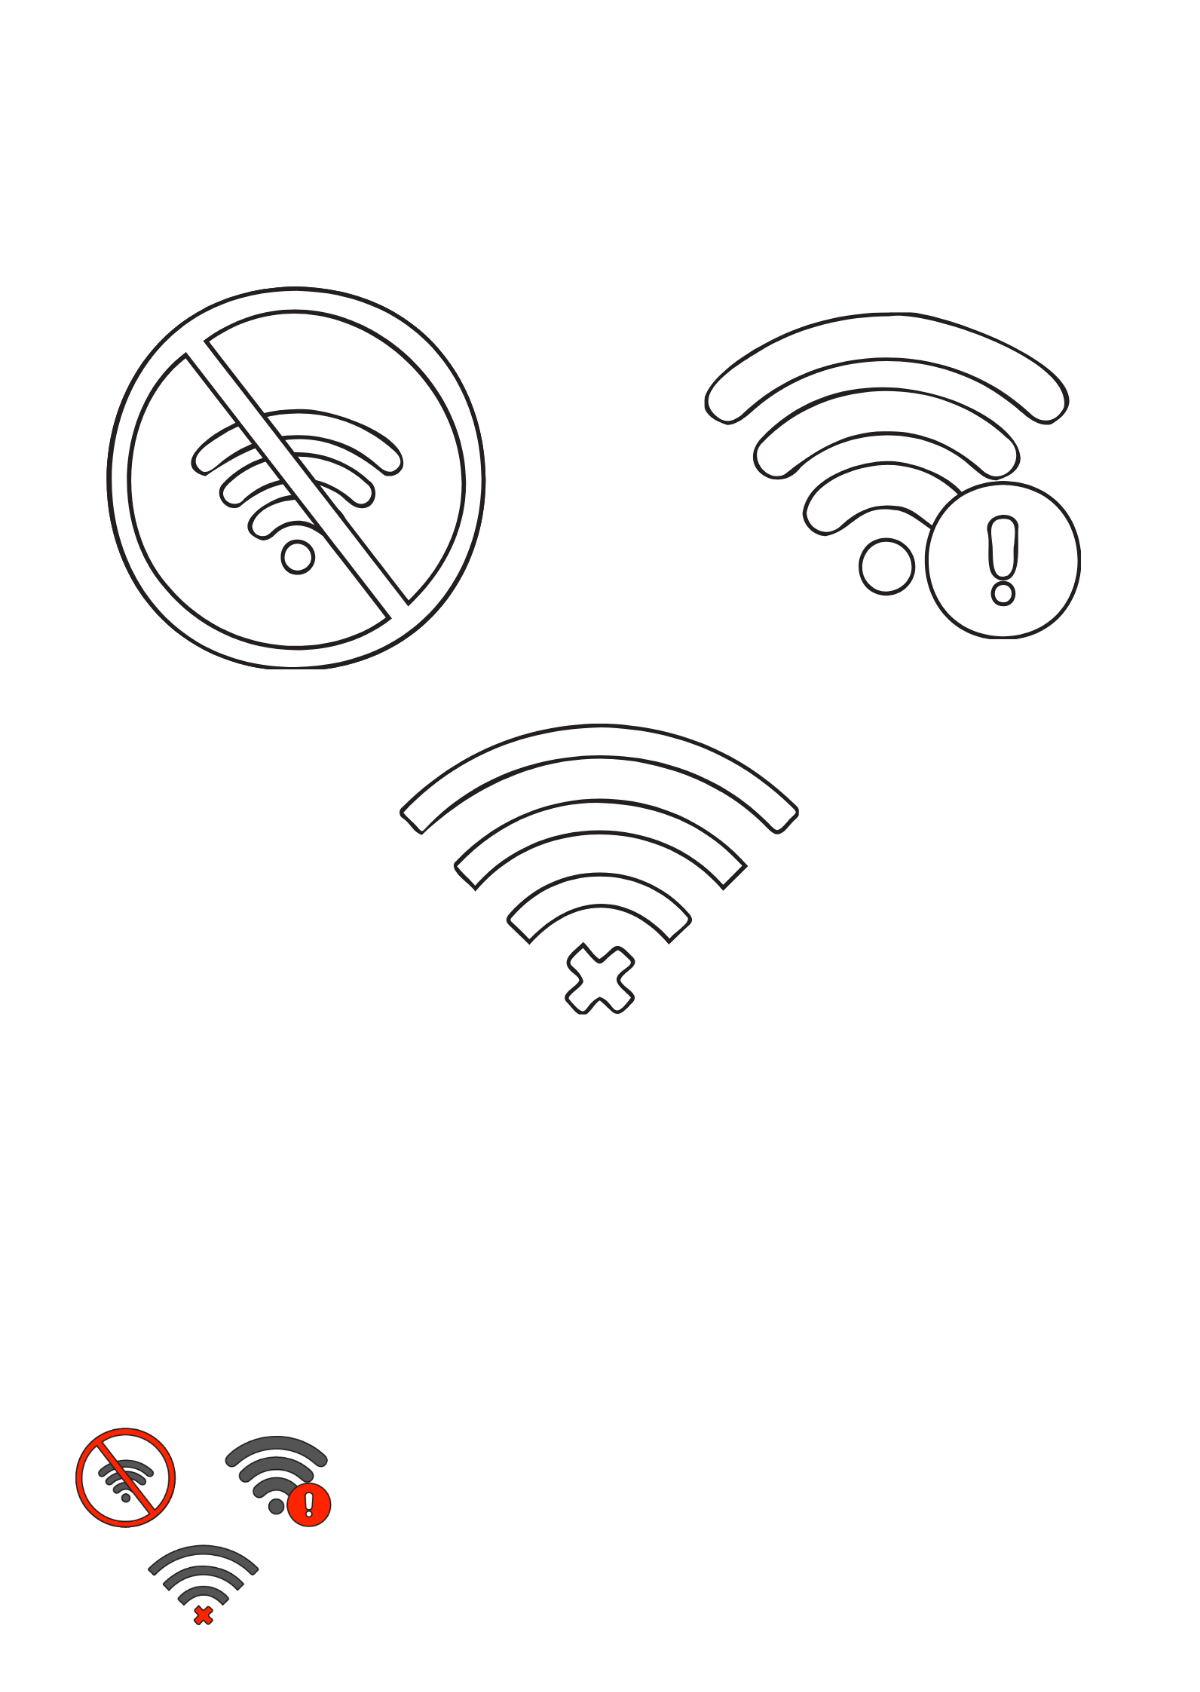 No Wifi Symbol coloring page